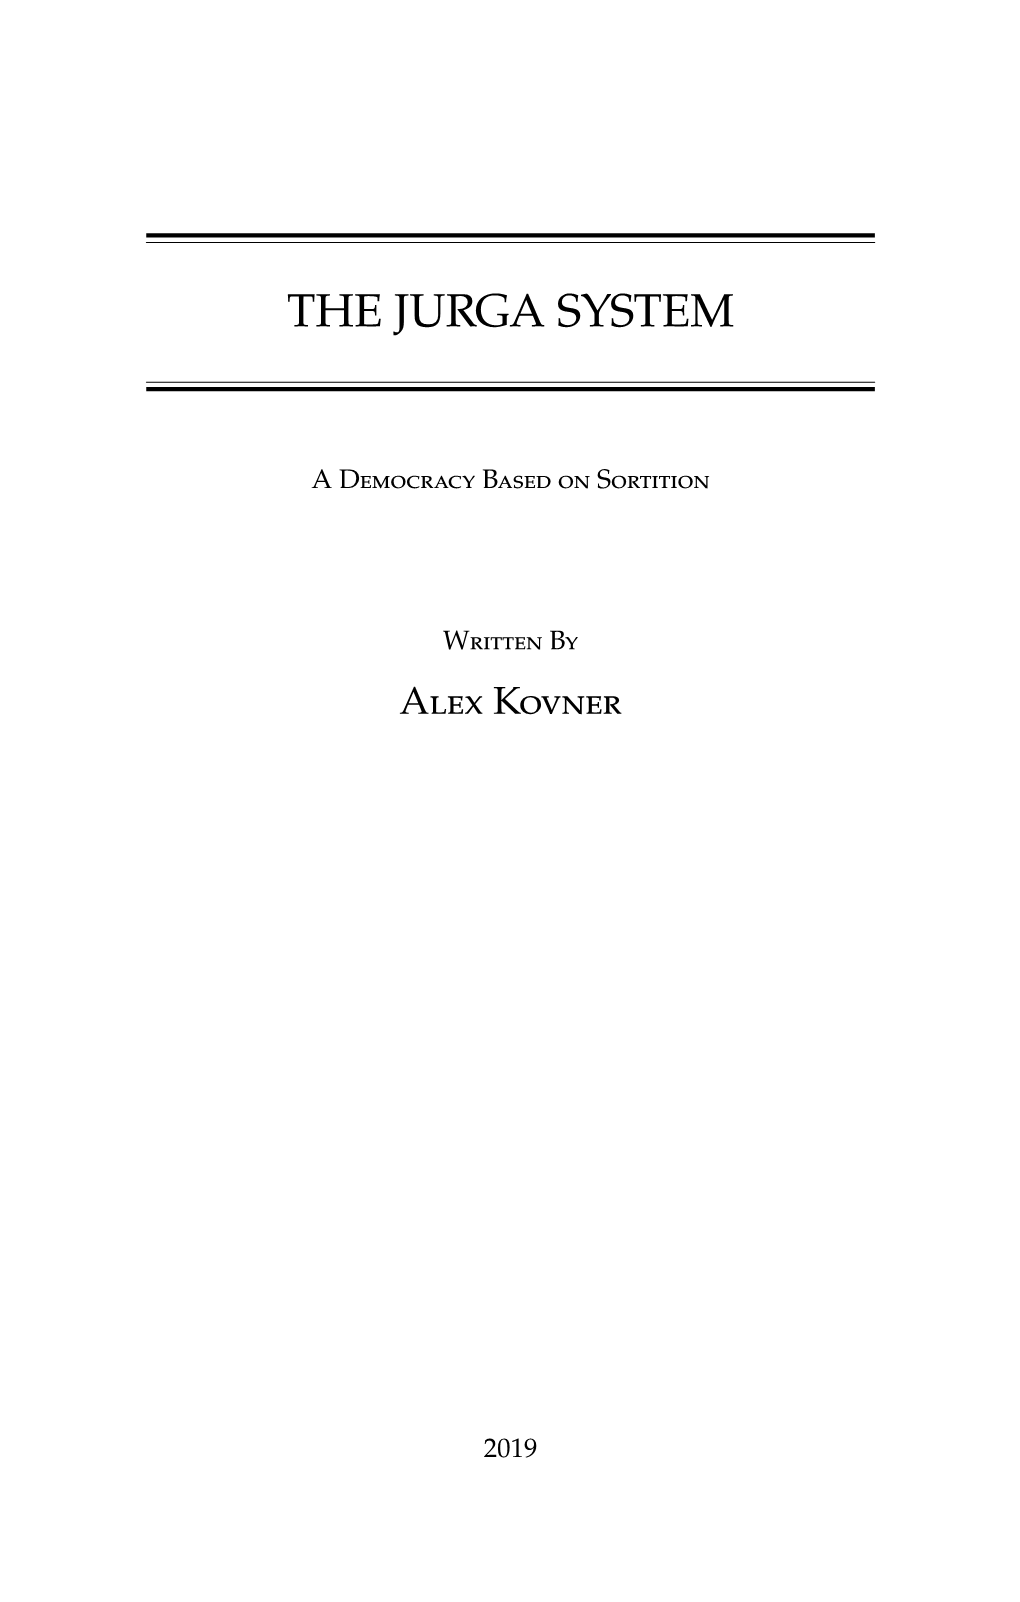 The Jurga System